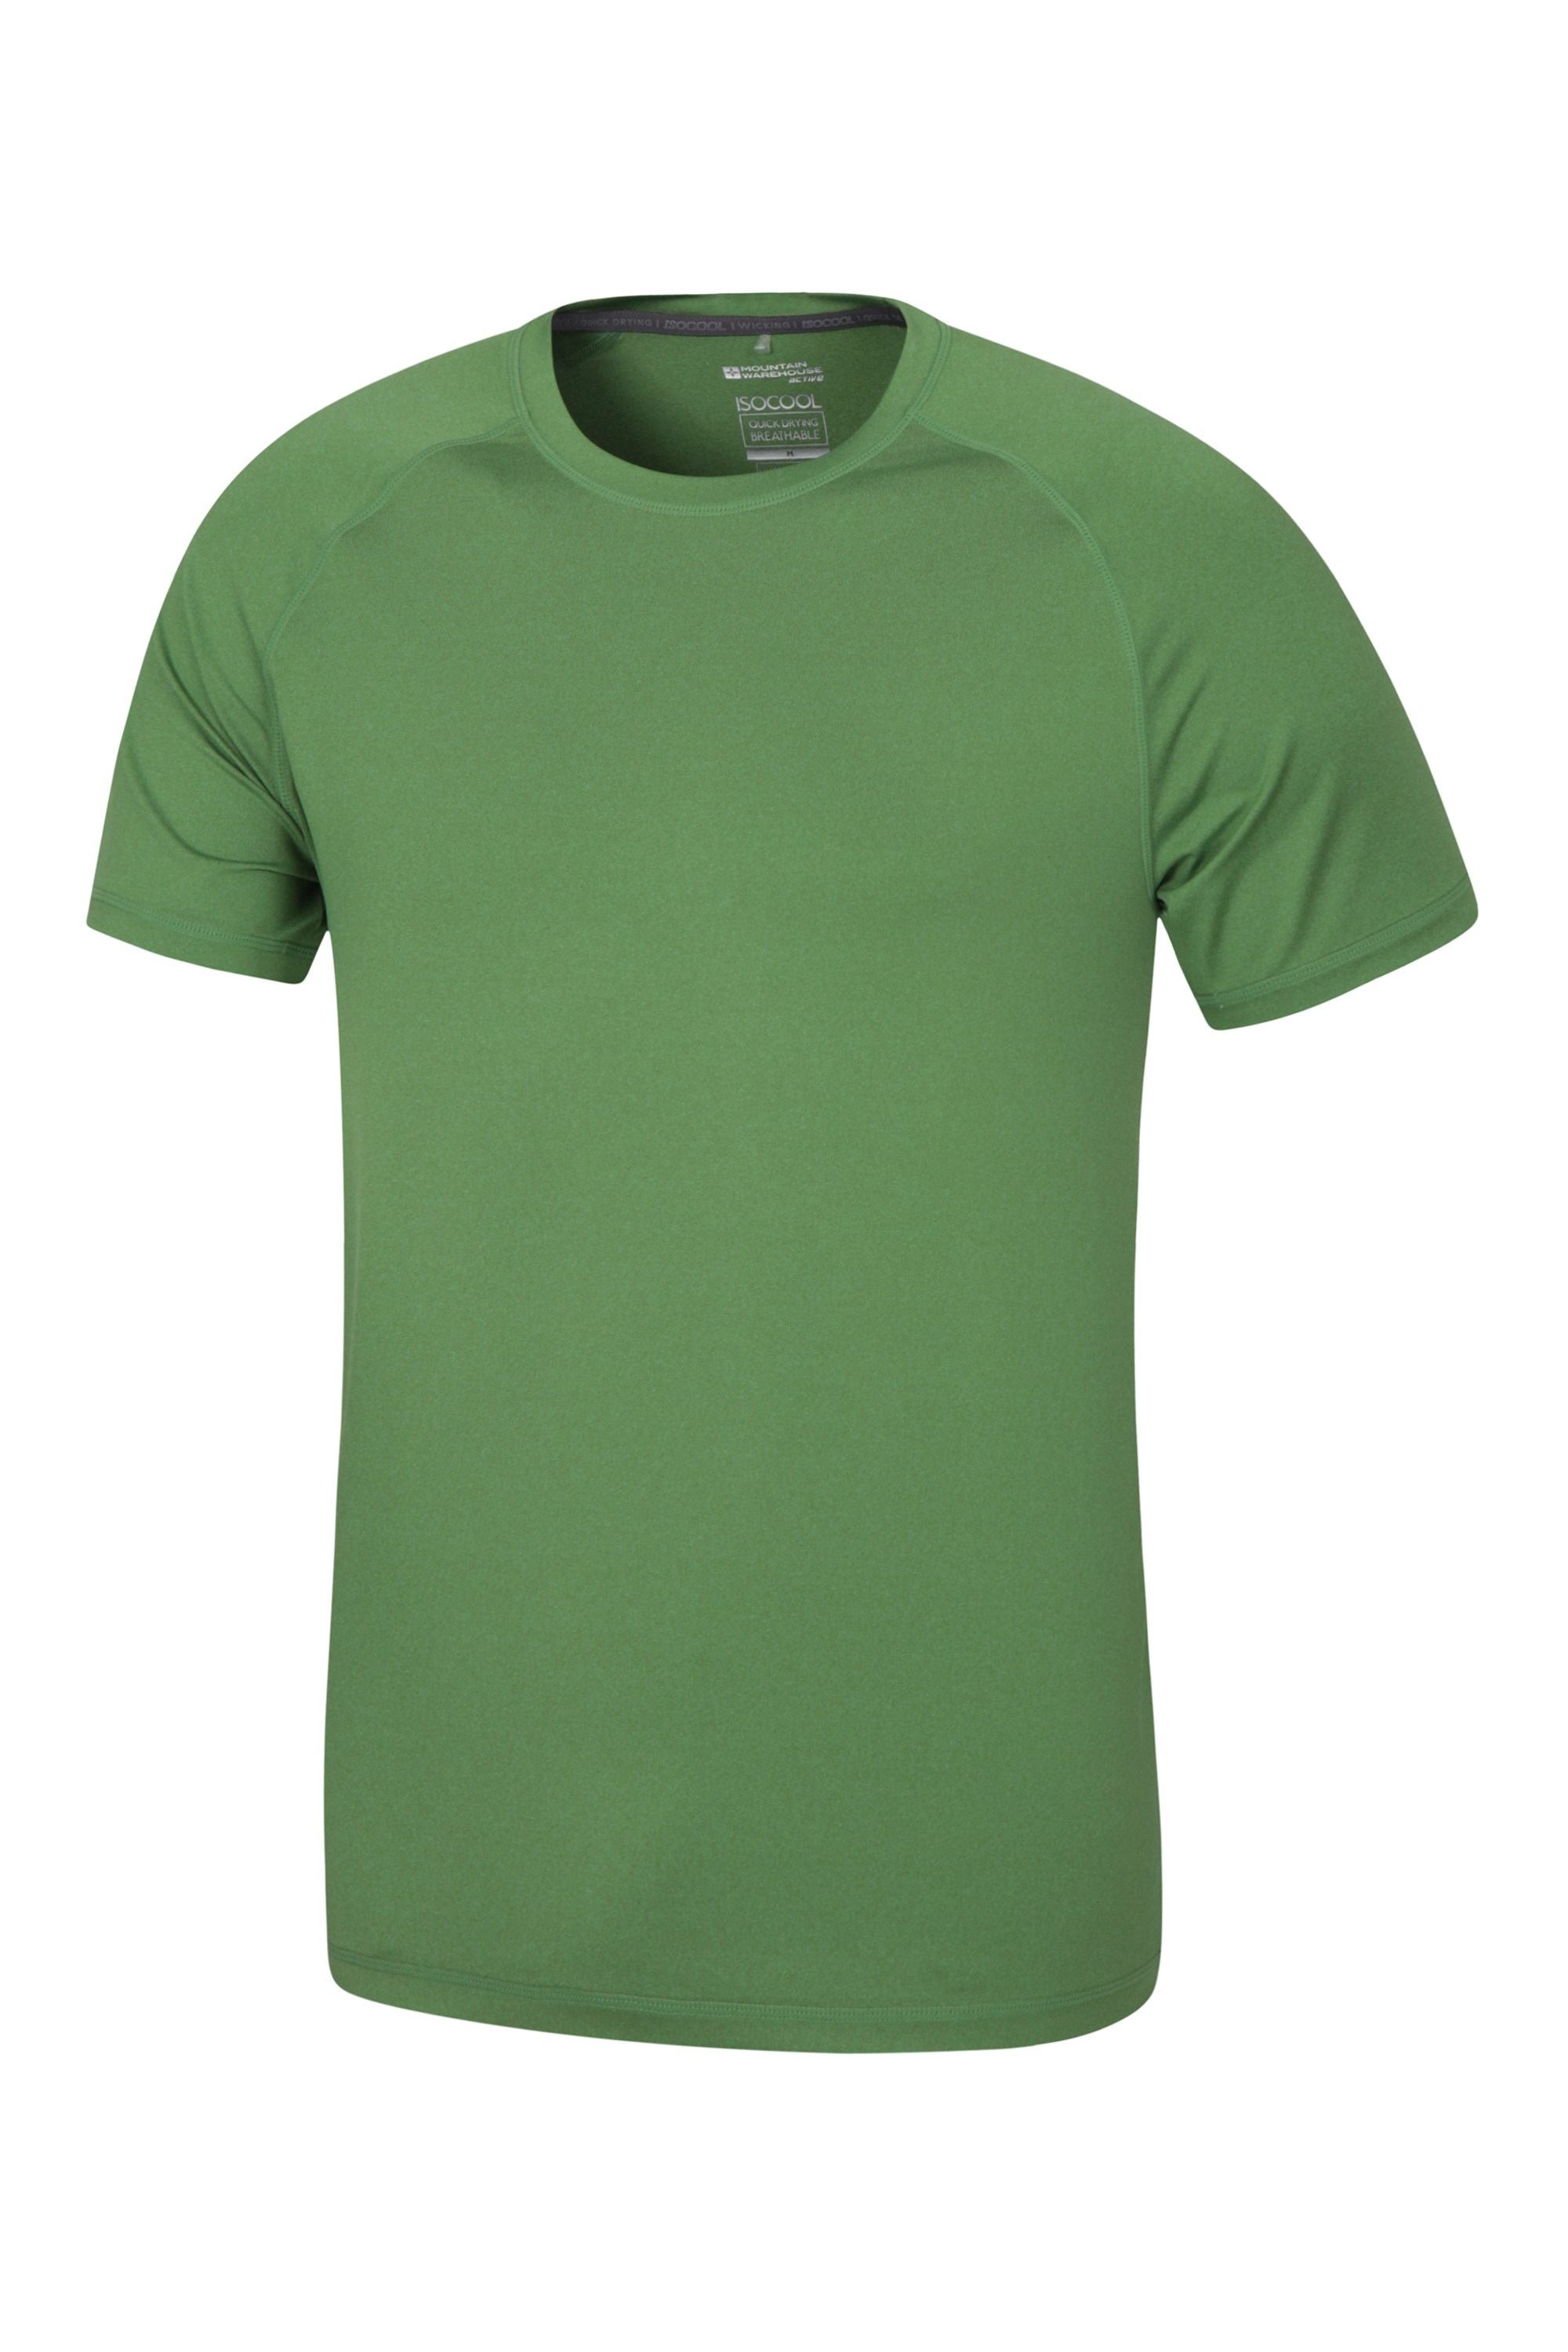 Agra Mens Melange T-Shirt - Green